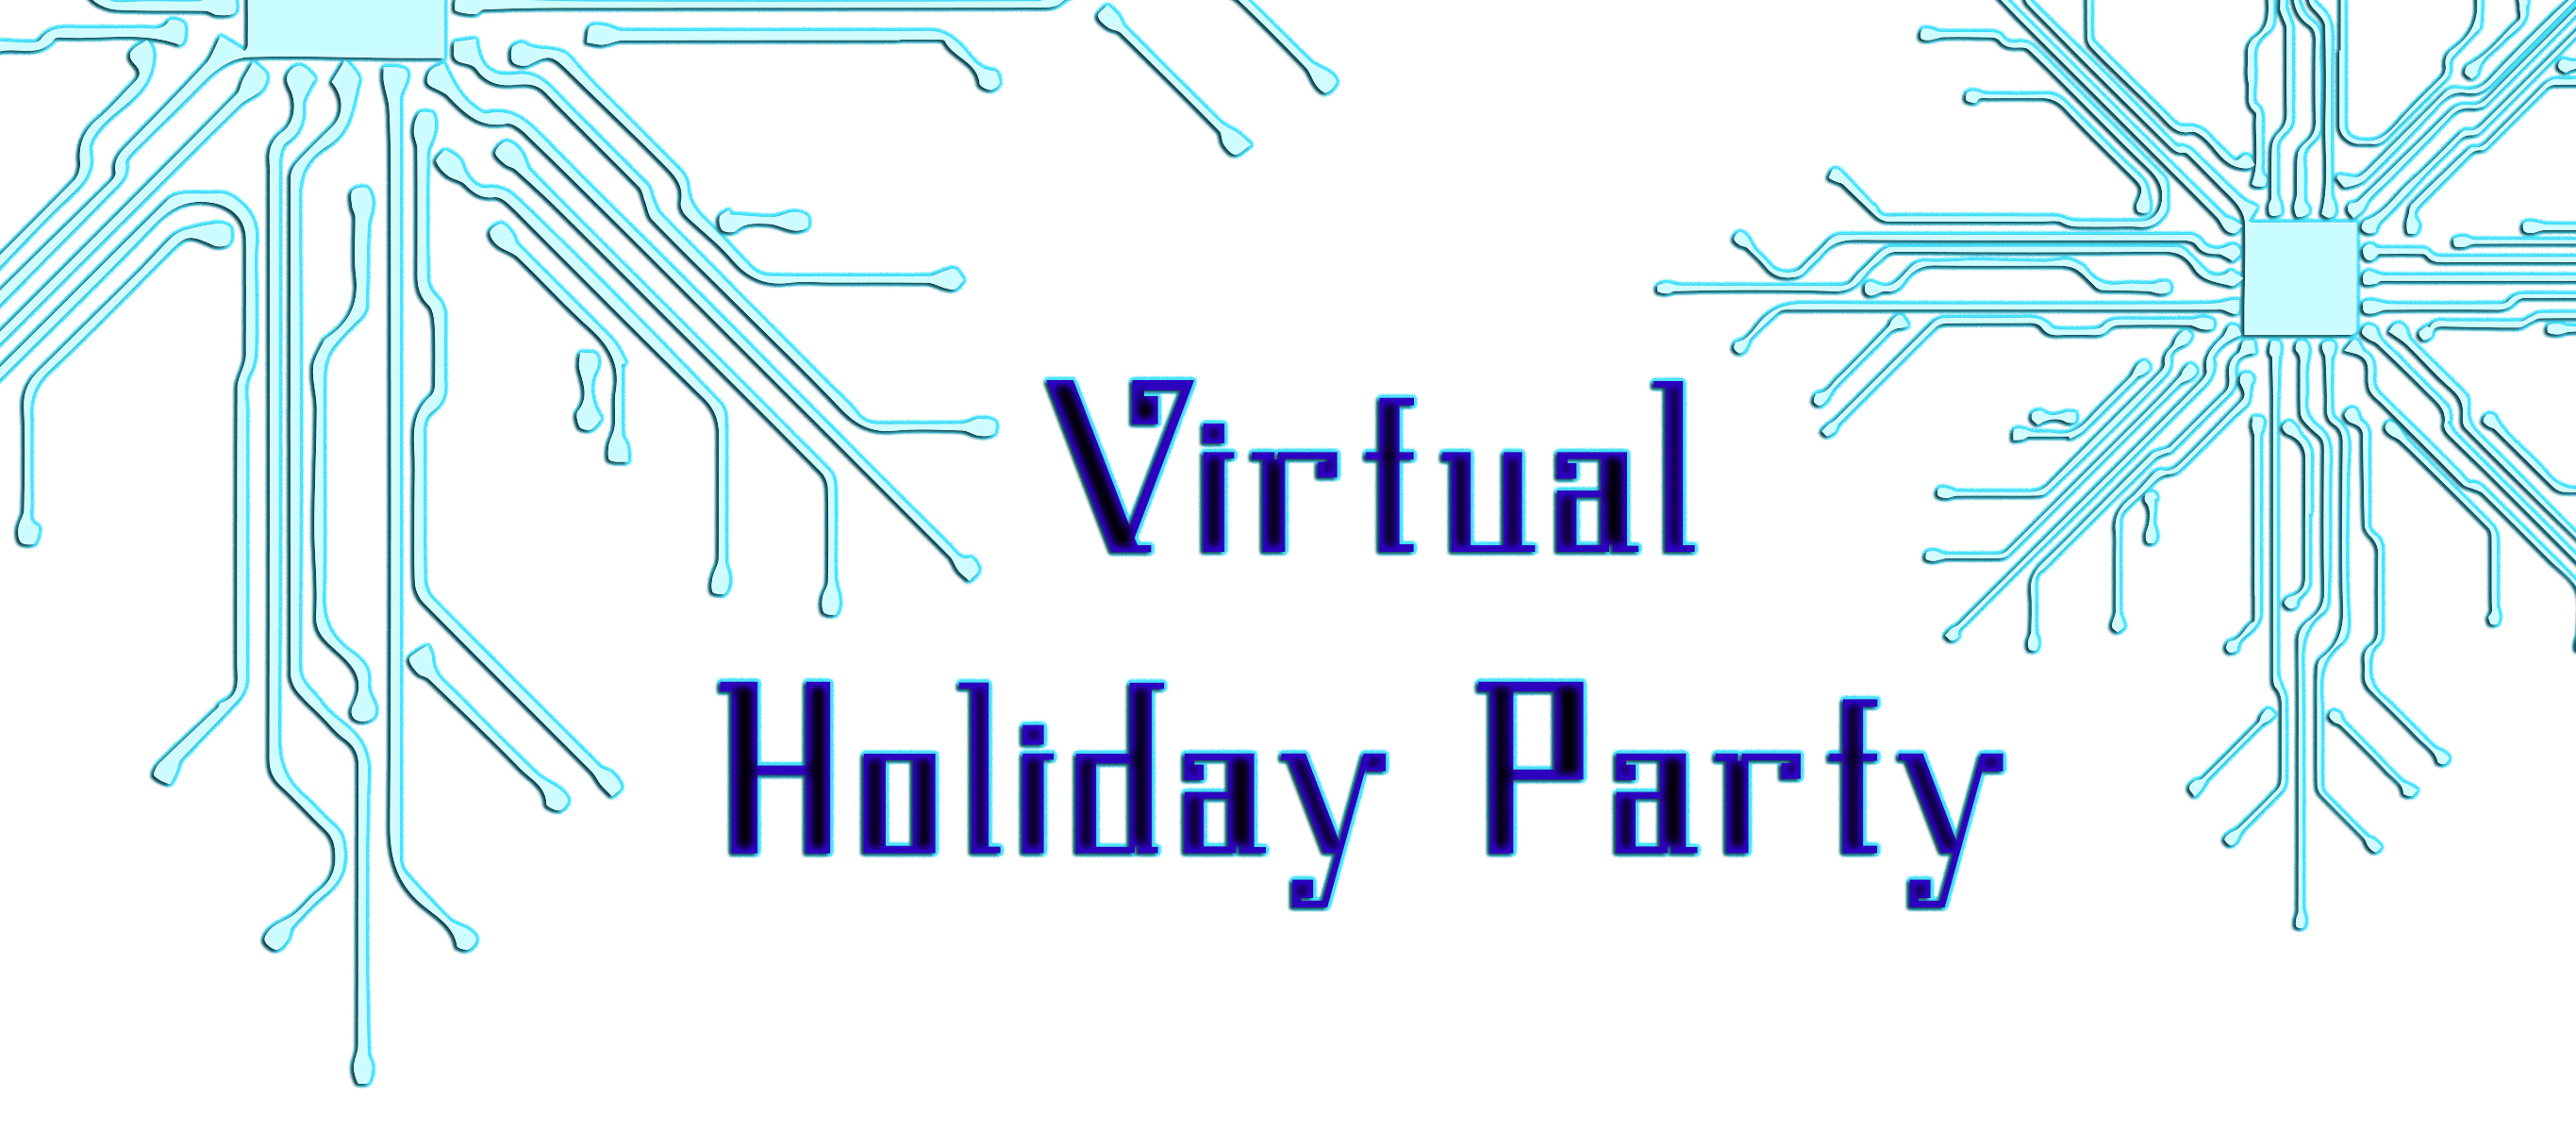 Virtual holiday party